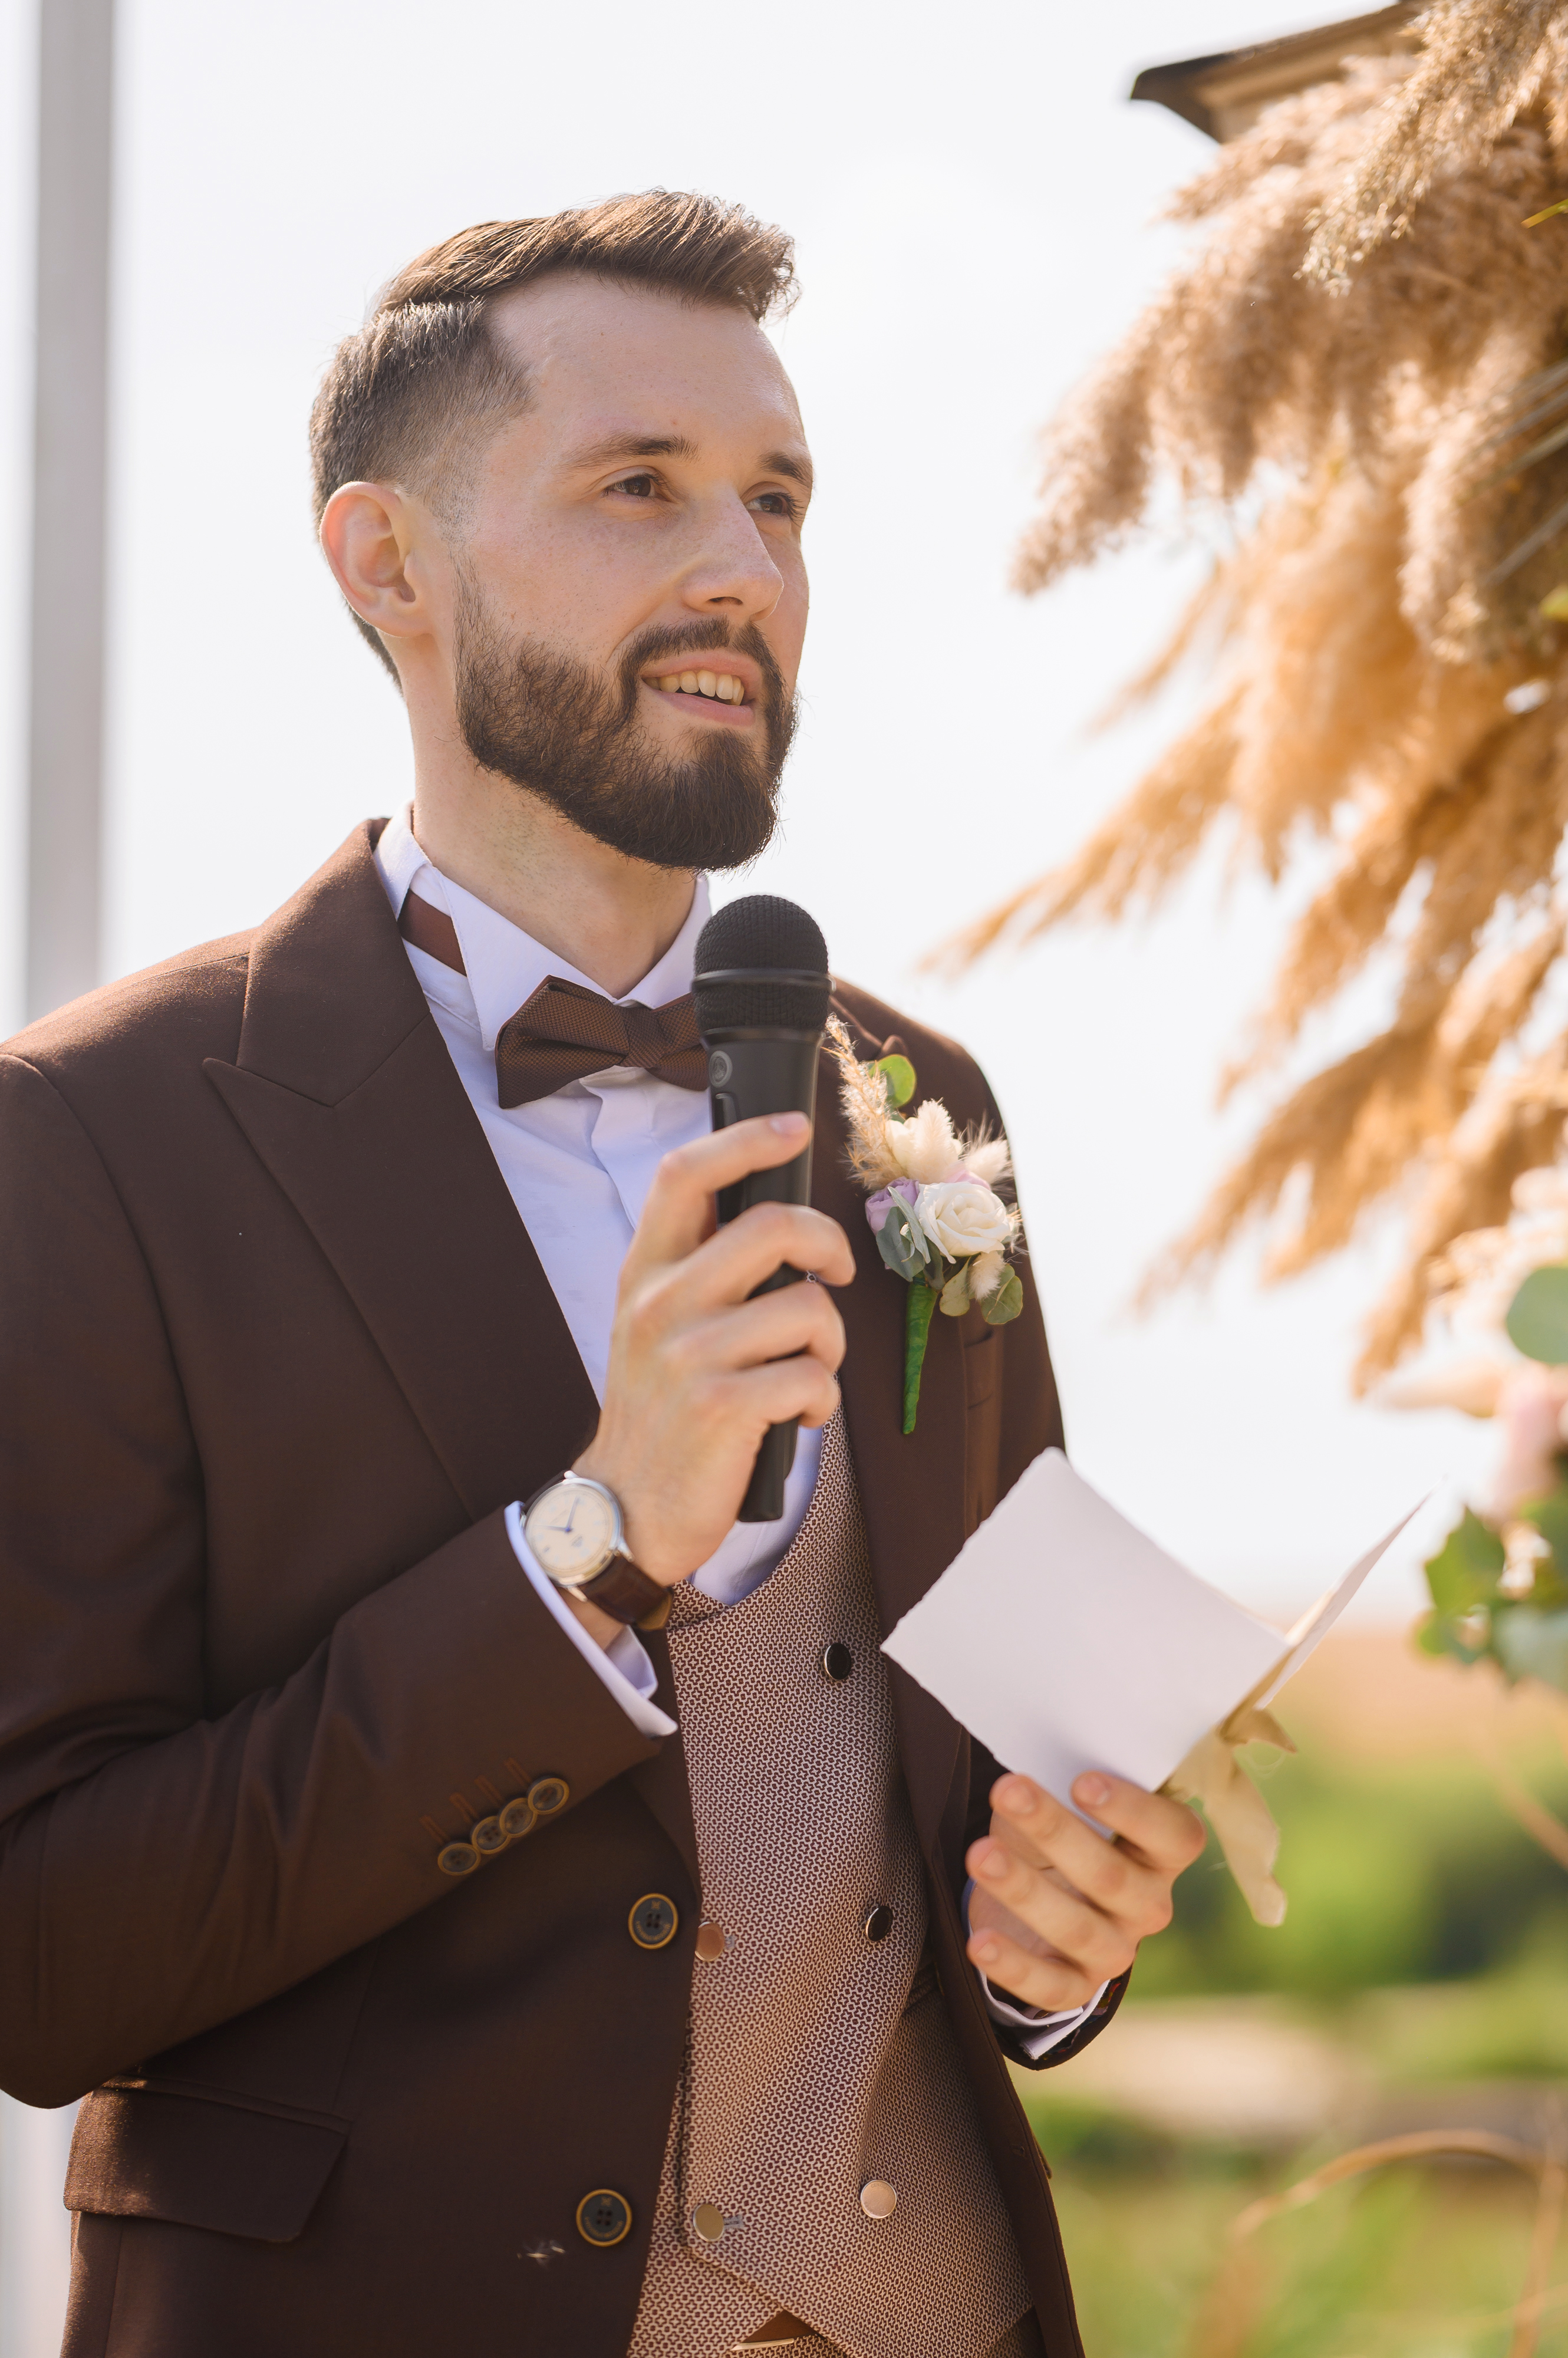 Nur zu Illustrationszwecken. Ein Mann hält eine Rede auf der Hochzeit seines Bruders | Quelle: Freepik